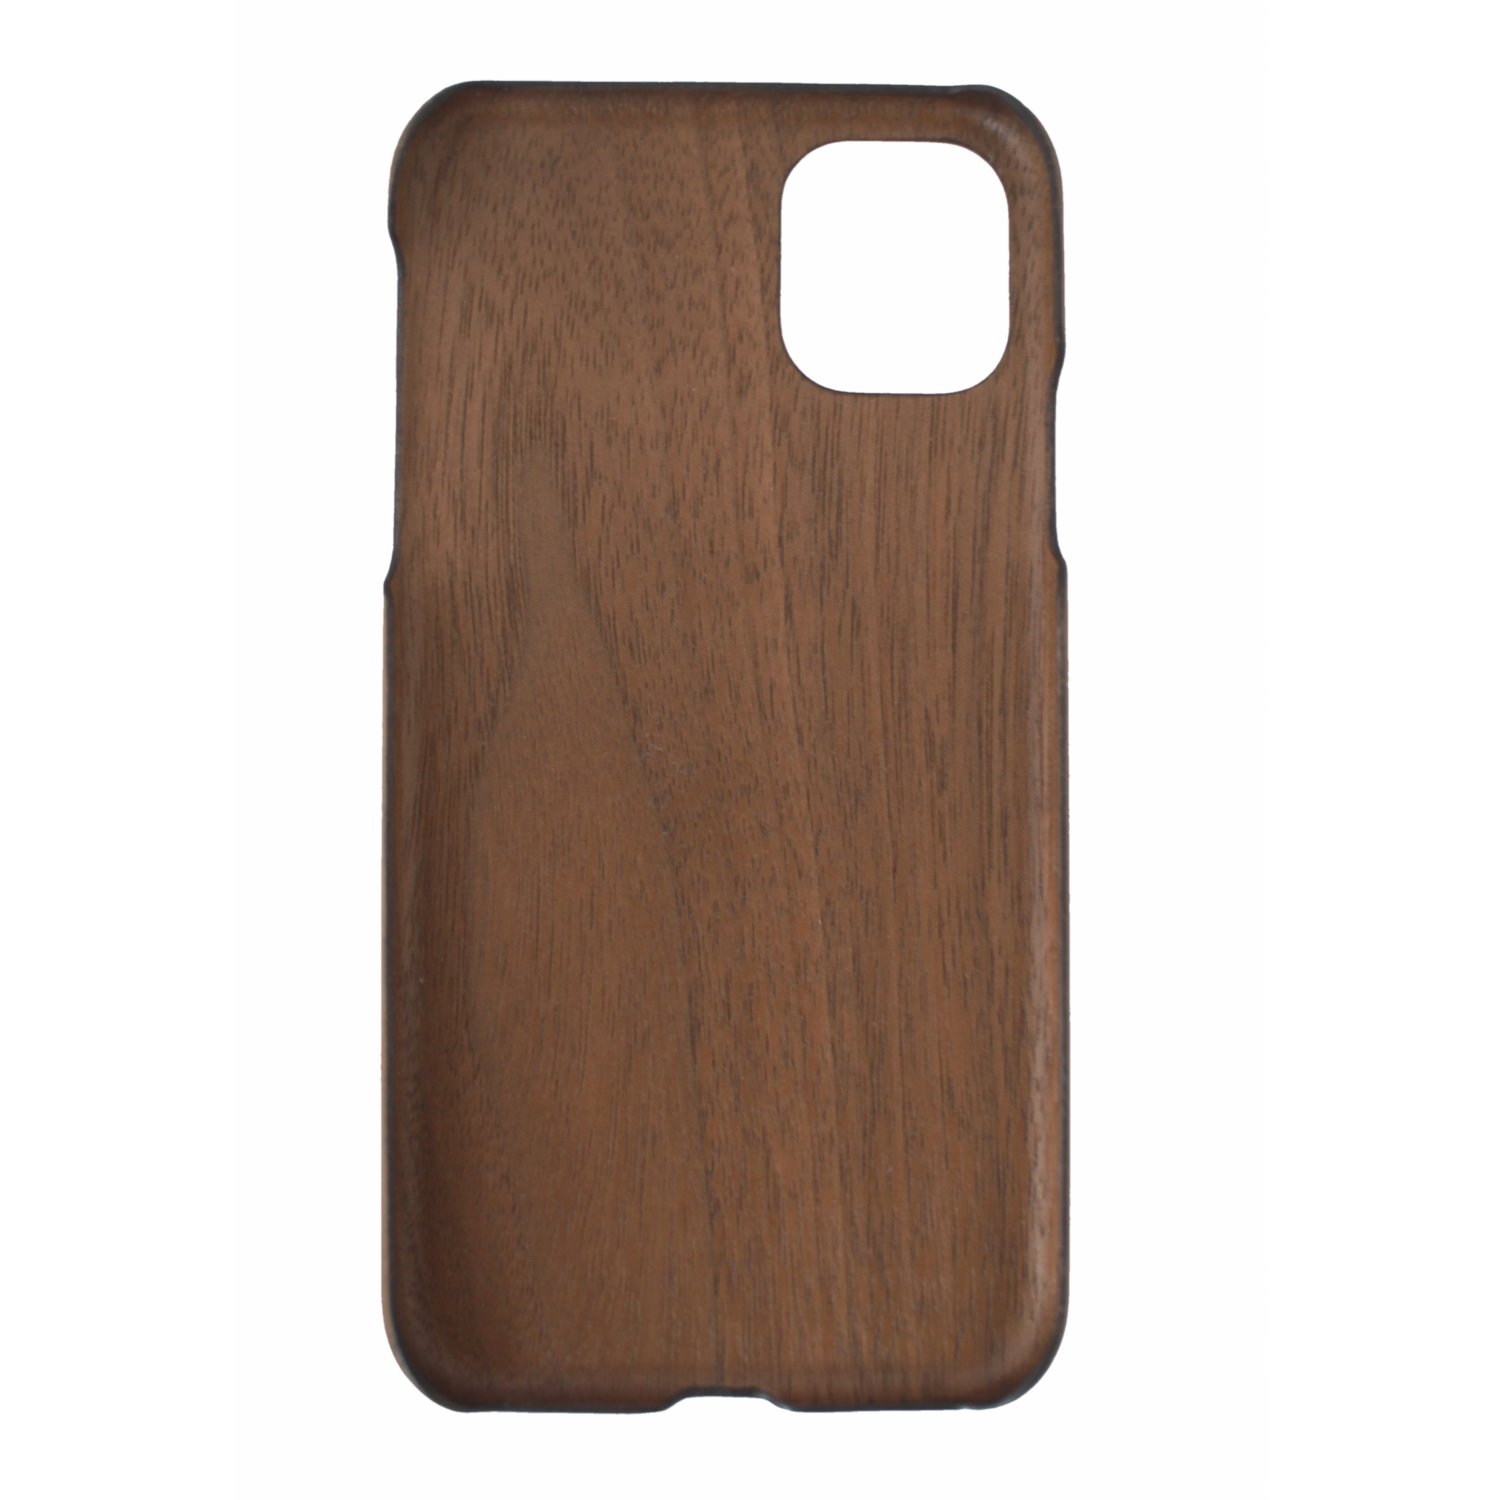 extradünnes und federleichtes Holzcase aus Nussbaum für Iphone11